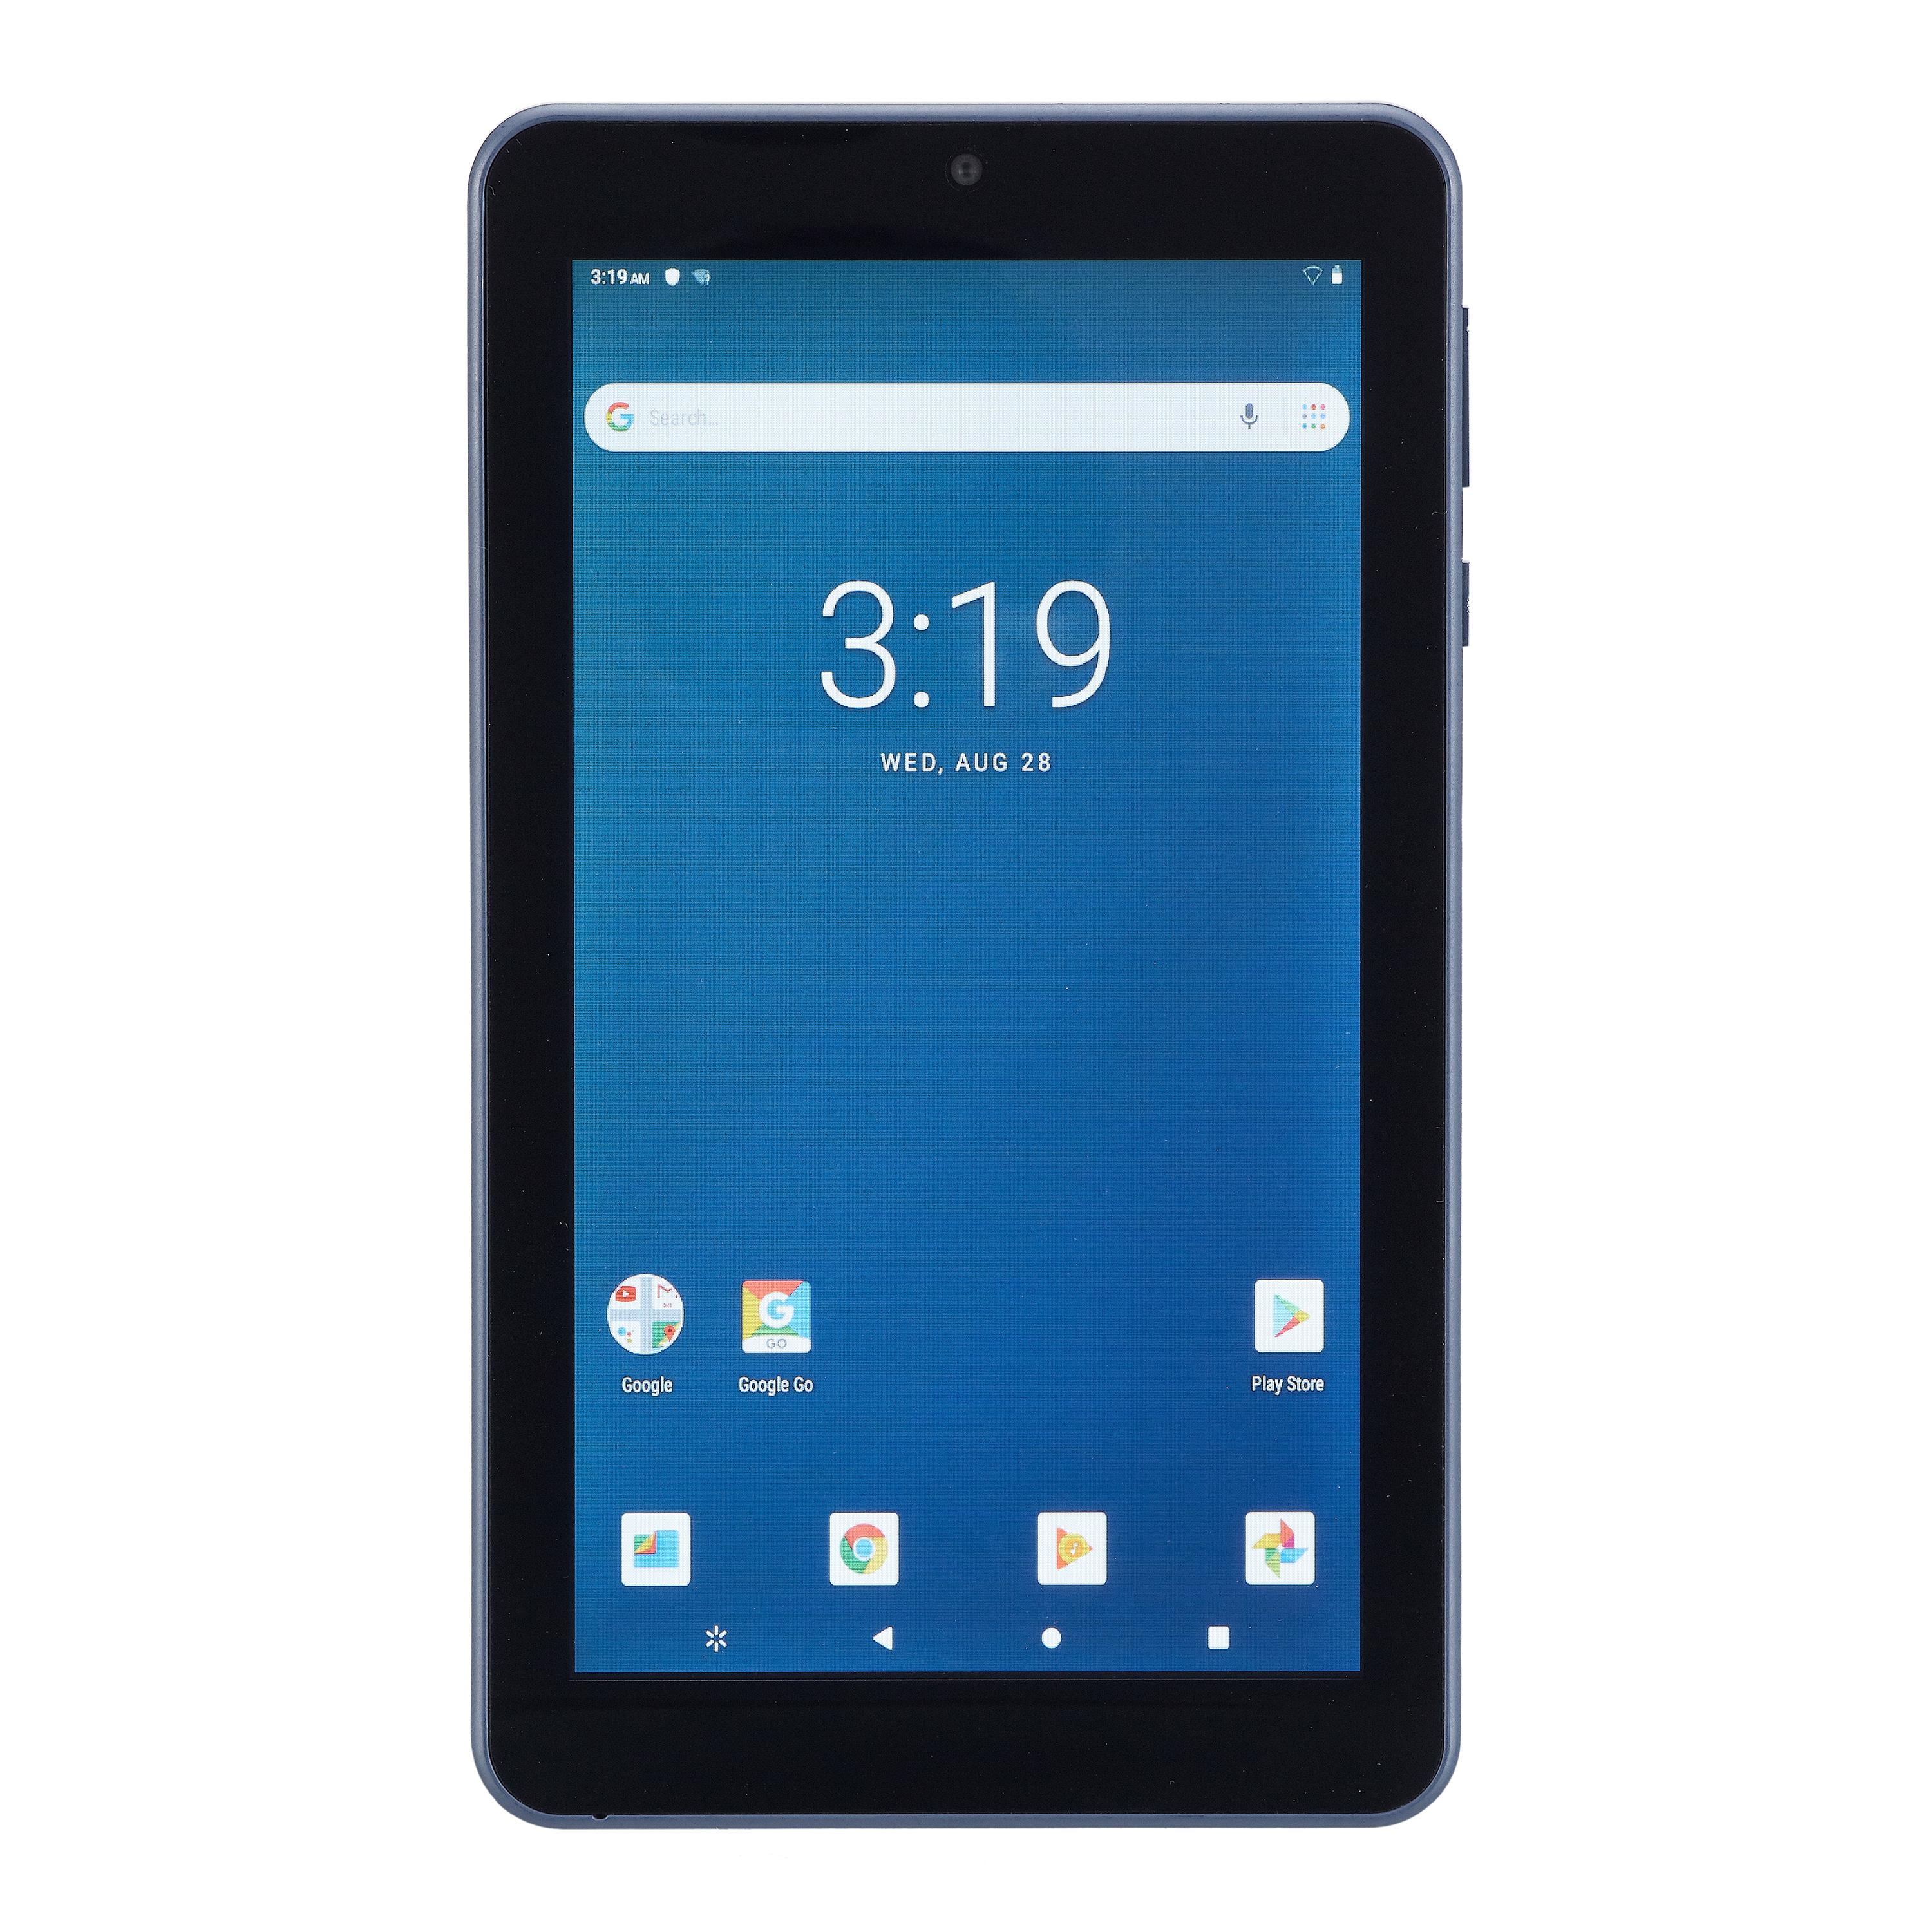 Onn 7 Android Tablet 16gb Storage 1gb Ram 1 3ghz Quad Core Processor Lcd Display Walmart Com Walmart Com